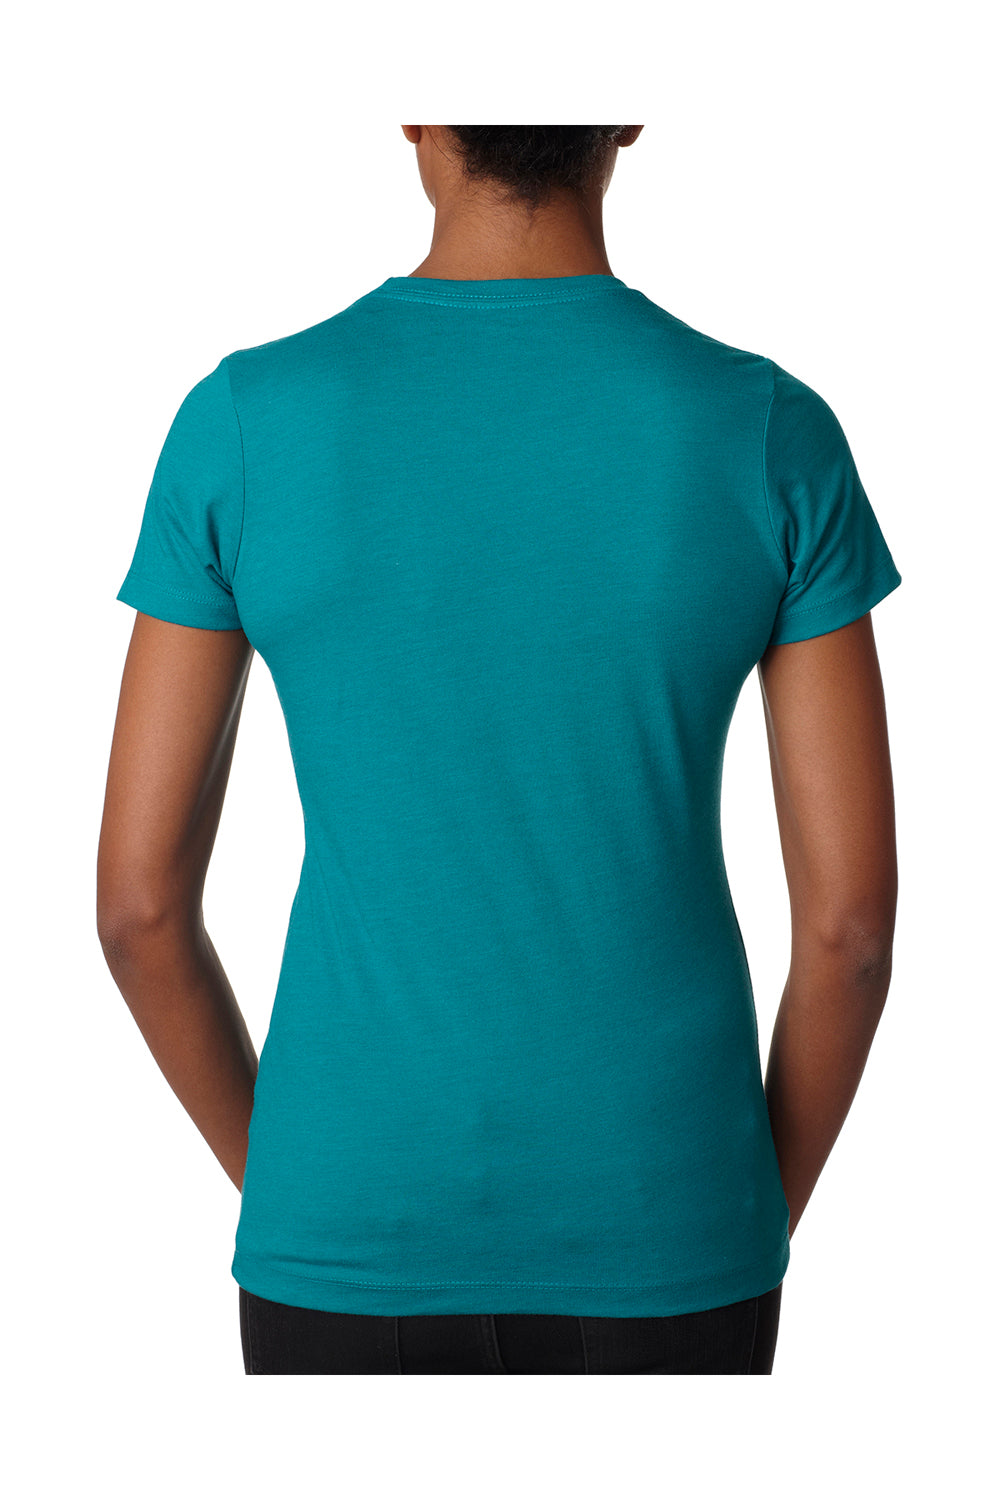 Next Level 6610 Womens CVC Jersey Short Sleeve Crewneck T-Shirt Teal Green Back